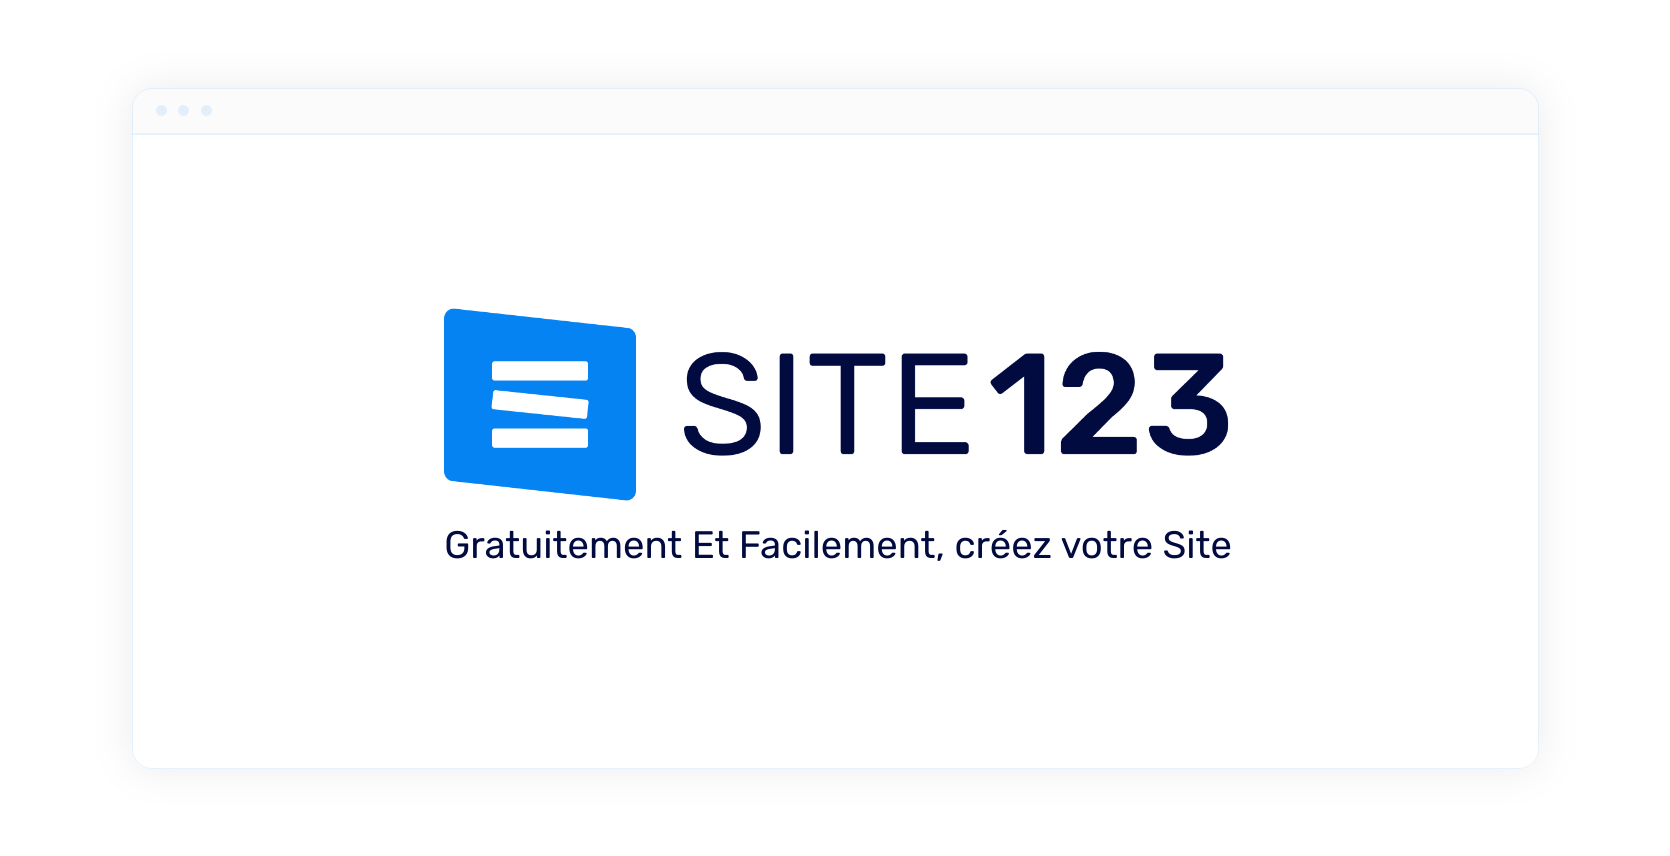 Avis SITE123 : Le meilleure outils pour créer une page web rapidement - Appvizer